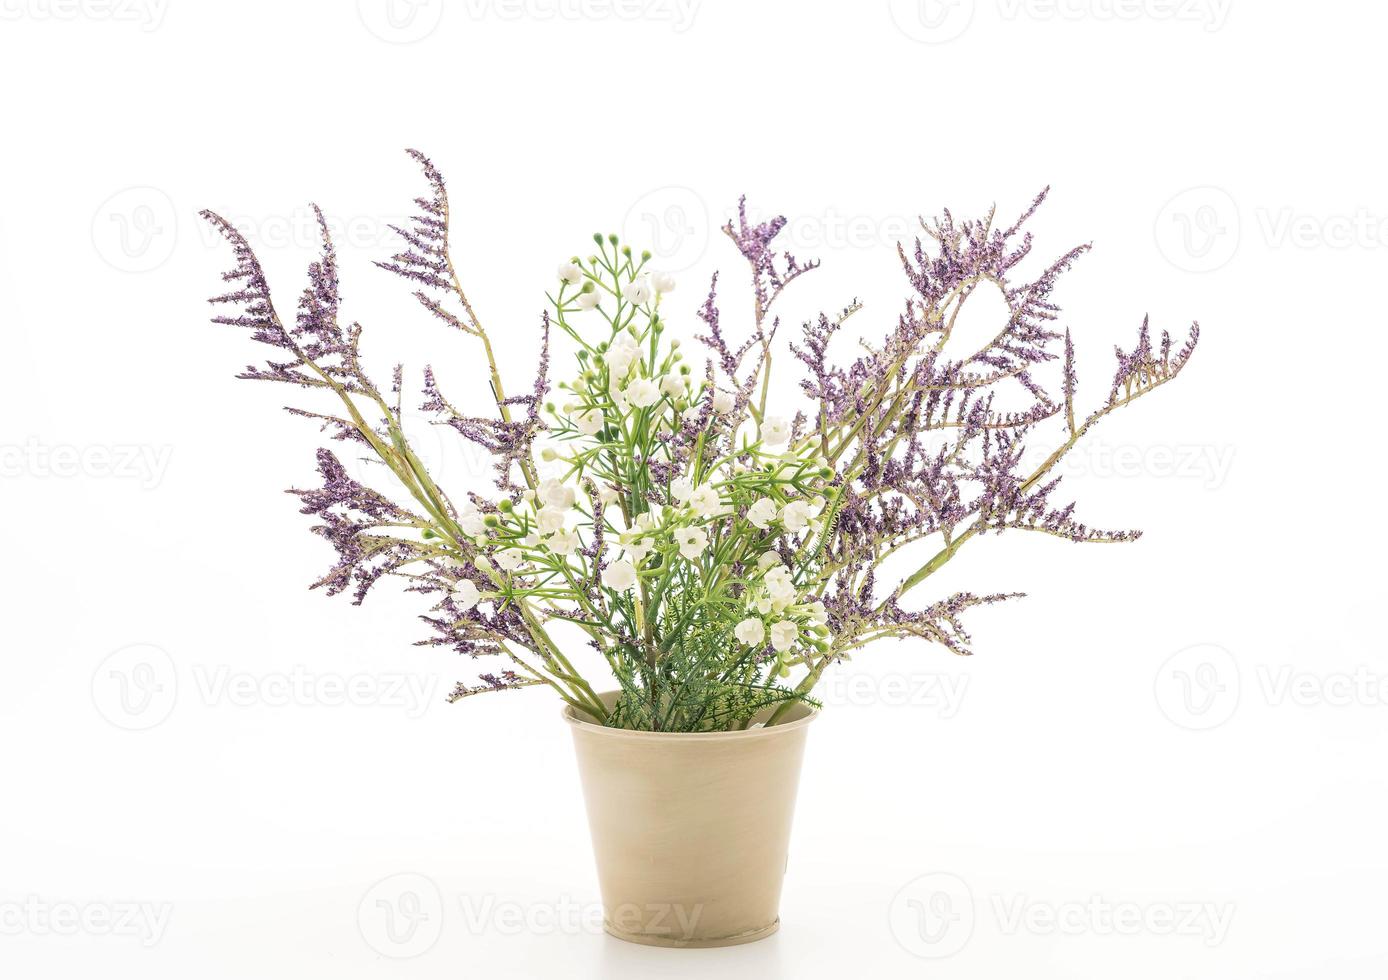 statice e caspia fiori in un vaso su sfondo bianco foto